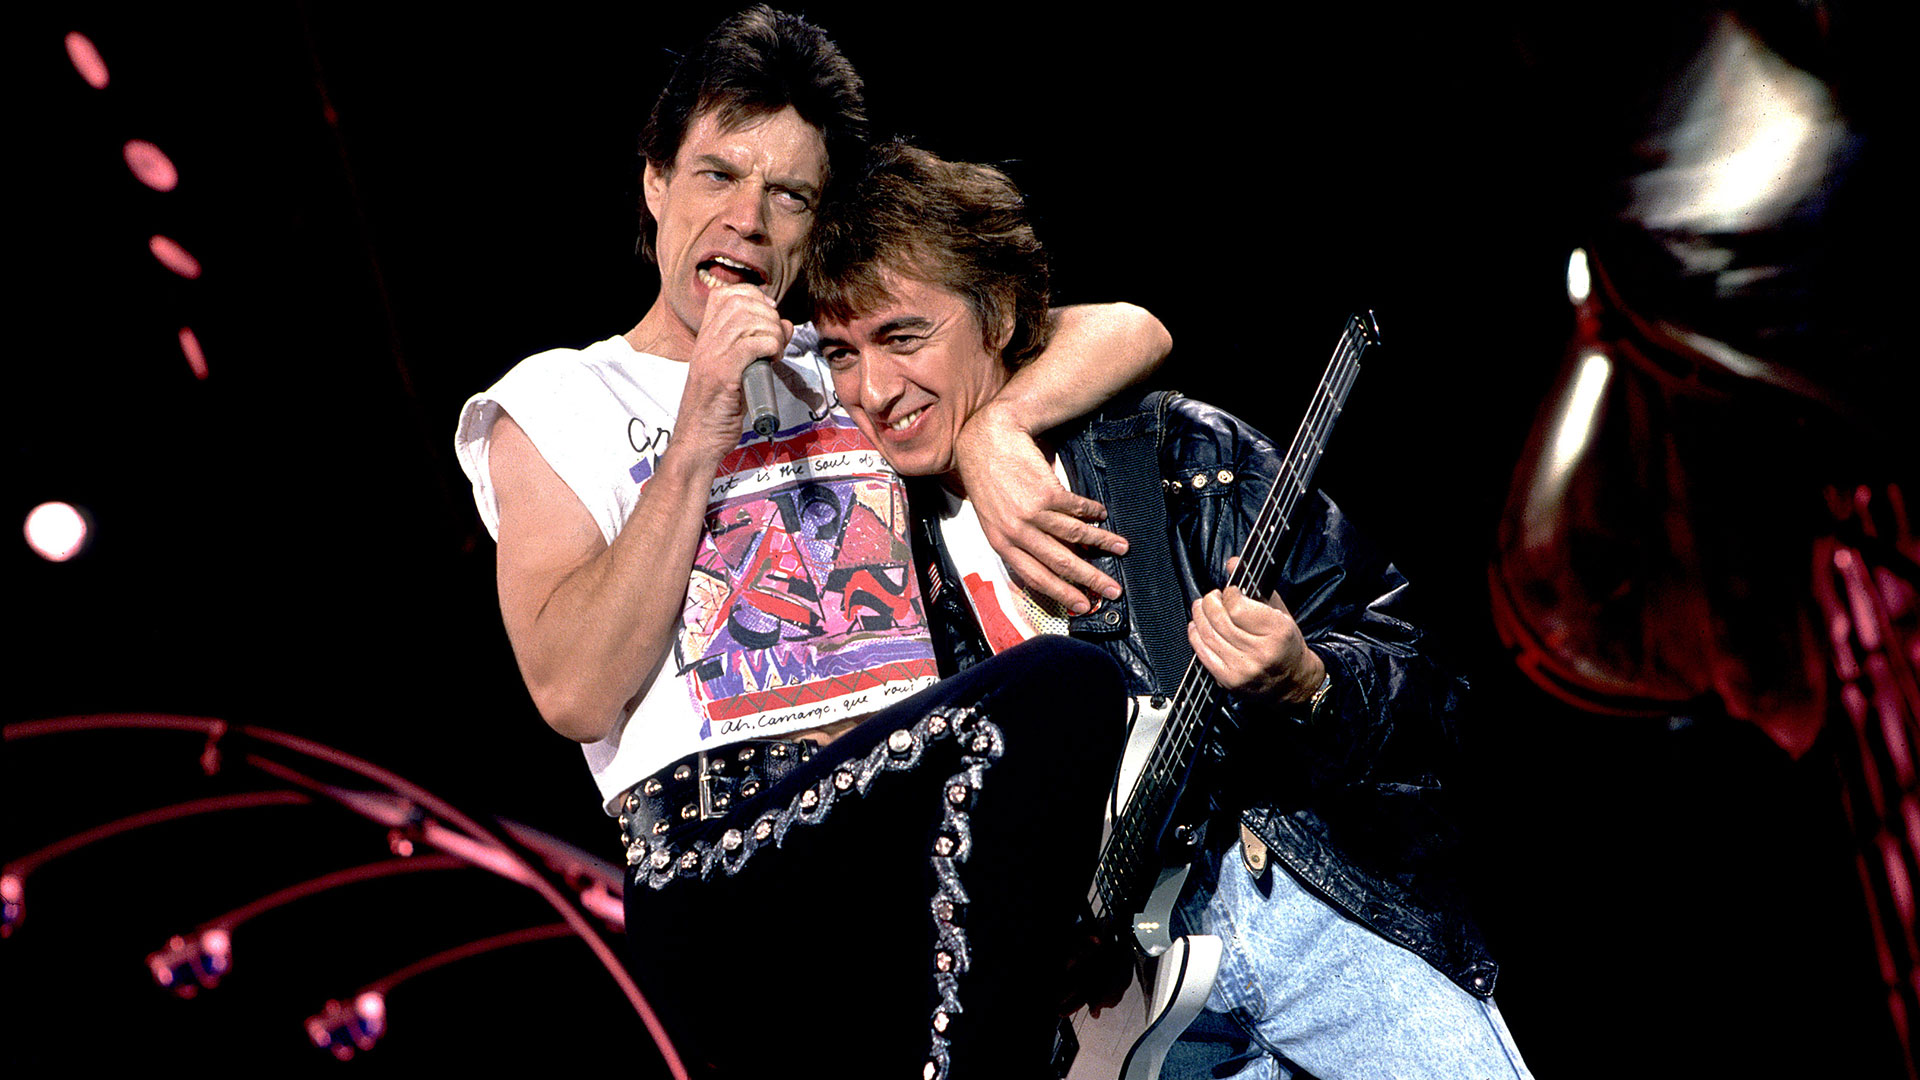 La relación con Mick Jagger siempre fue tirante. Wyman se sintió menospreciado por él. Jagger durante varios años creyó que el bajista regresaría a la banda (Photo by Paul Natkin/Getty Images)